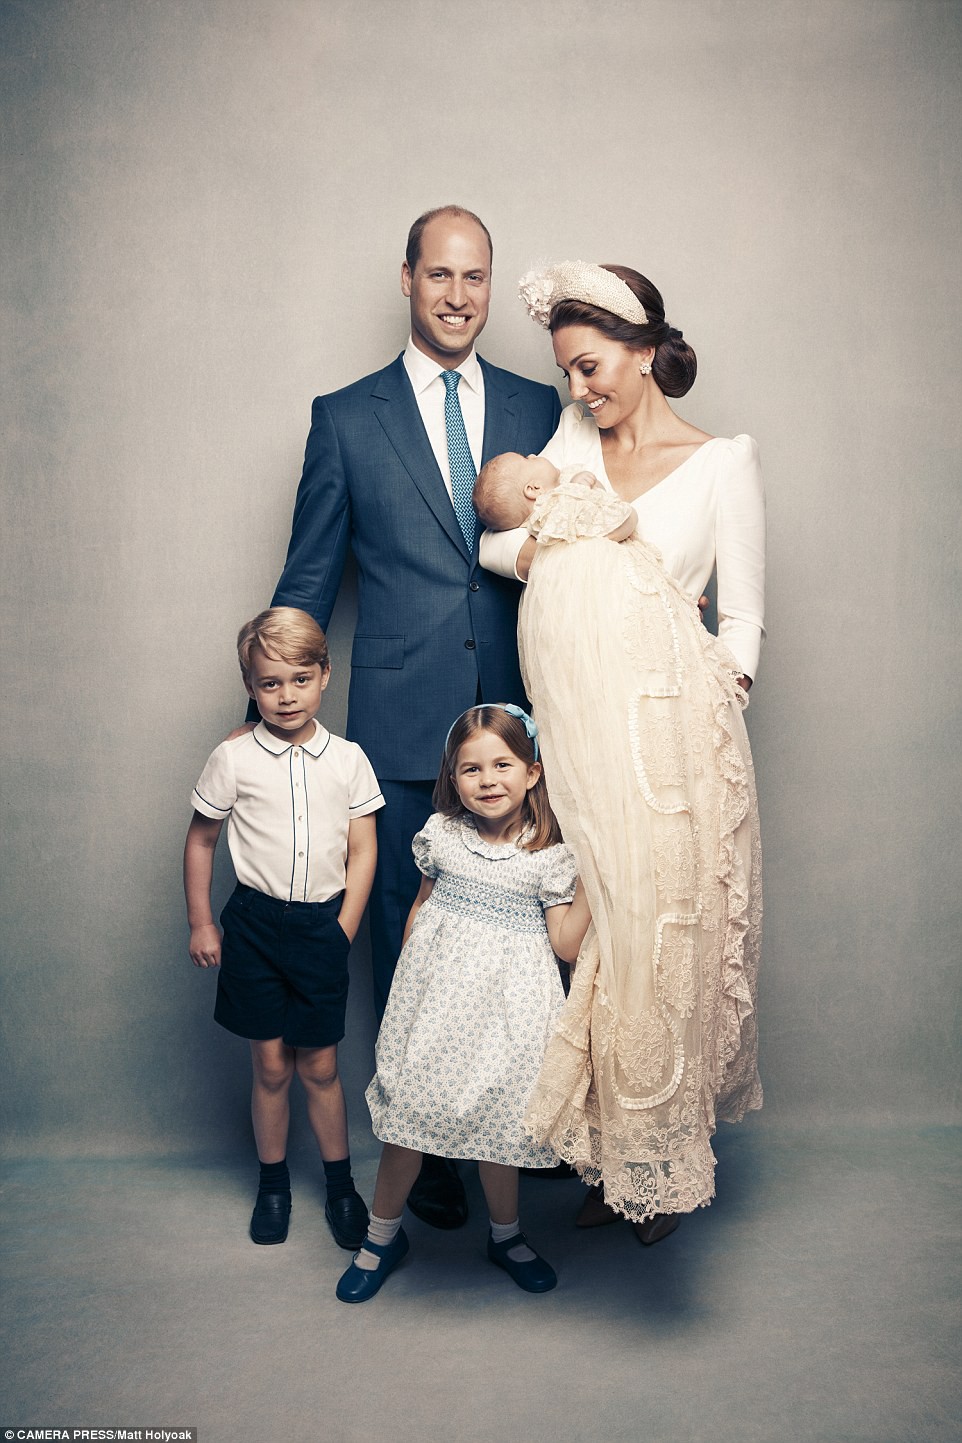 Công bố ảnh chính thức lễ rửa tội Hoàng tử Louis: Gia đình William - Kate hạnh phúc rạng ngời, nhà ngoại đẹp lấn át thông gia bên nội - Ảnh 3.